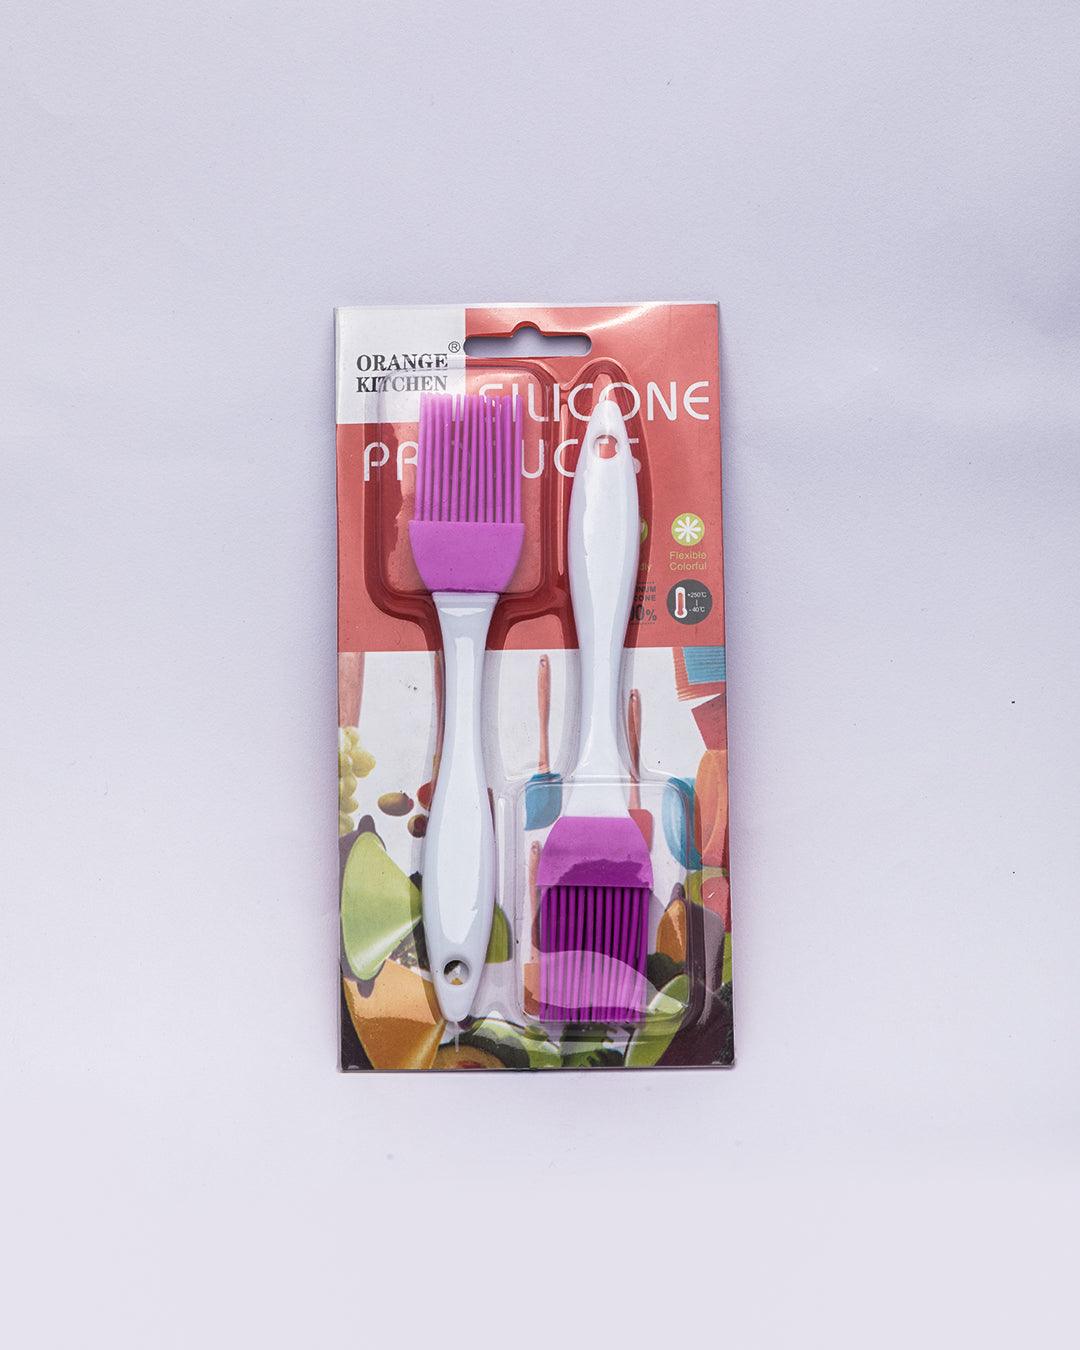 Oil Brush, Basting Brush, Pastry Brush for Cooking, Purple, Plastic, Set of 2 - MARKET 99